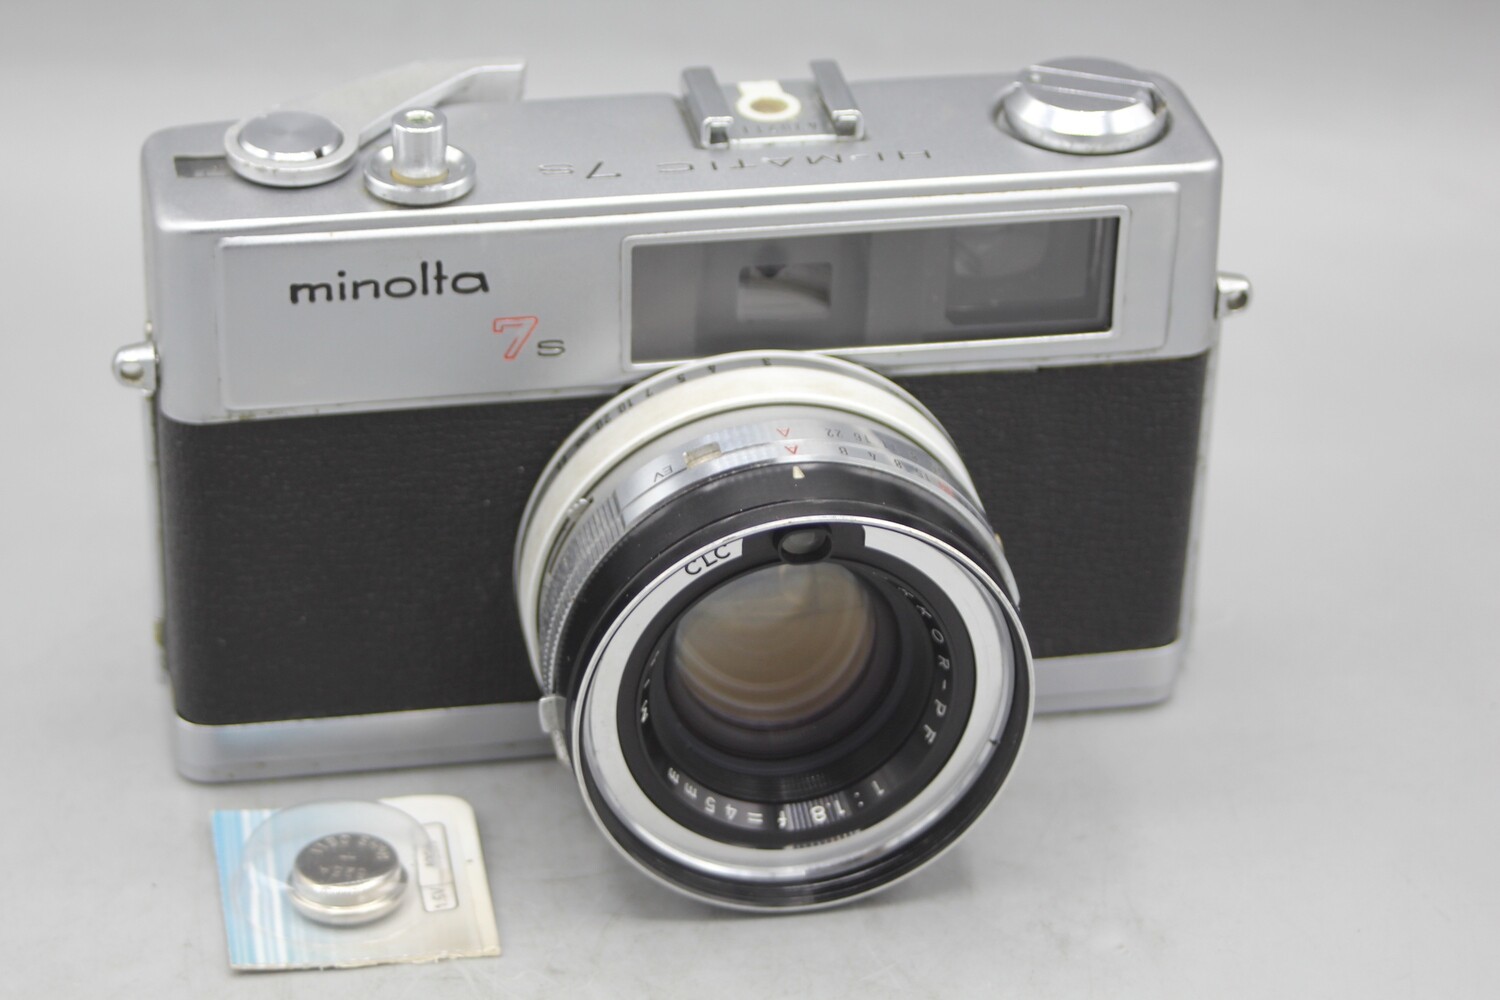 Minolta Hi Matic 7s 35mm Rangefinder Film Camera Clad Seals Tested